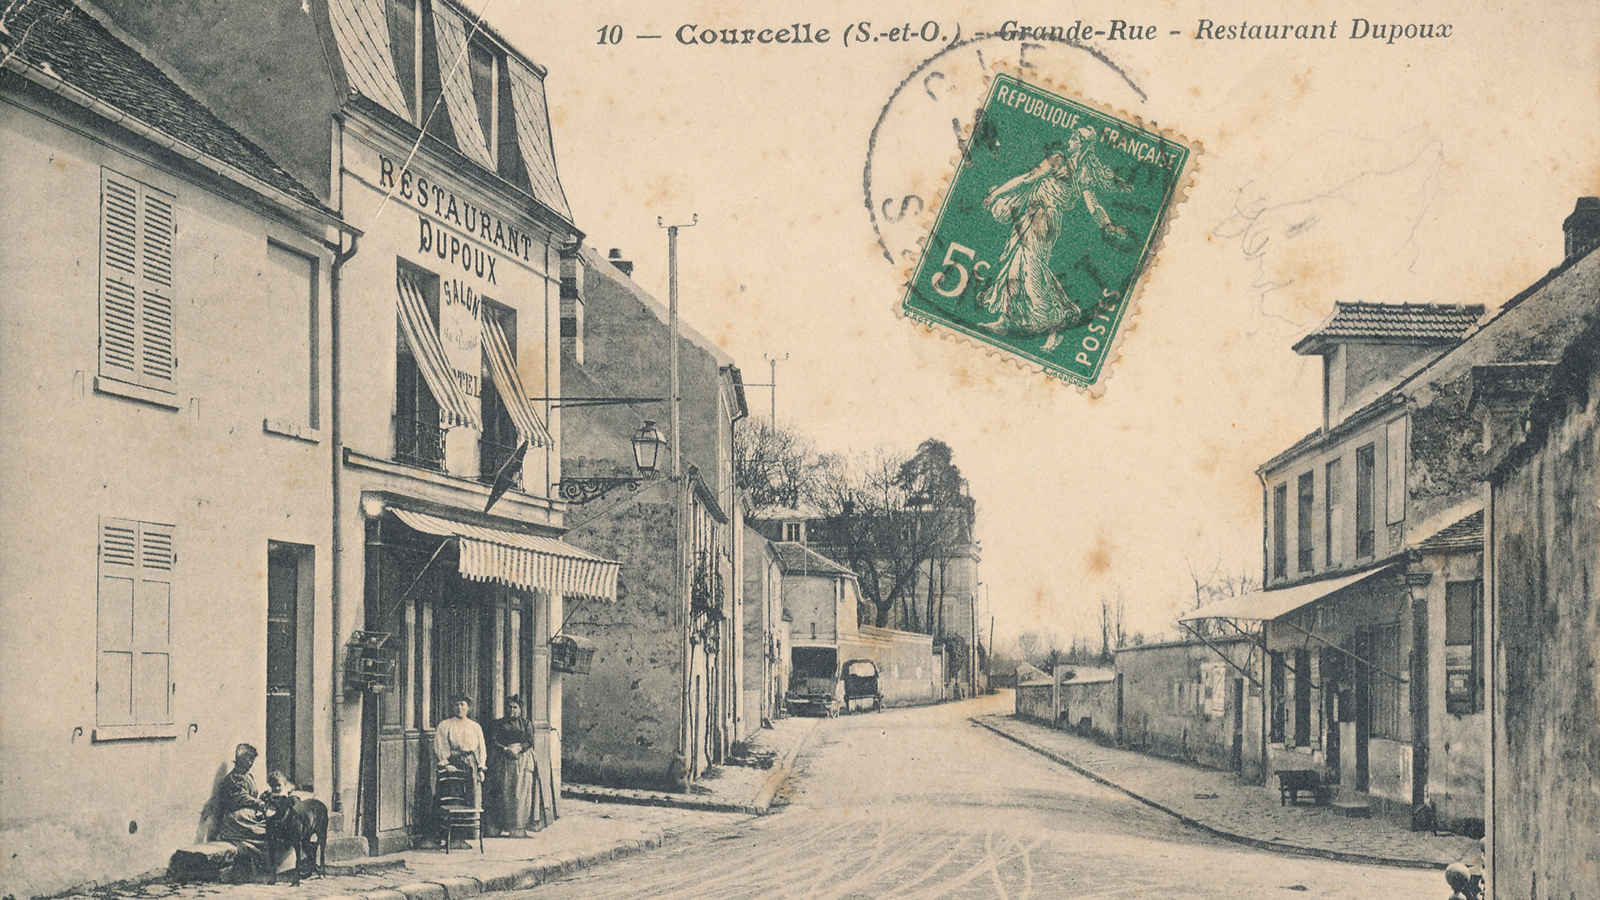 Courcelle : Grande Rue -  Restaurant Dupoux 